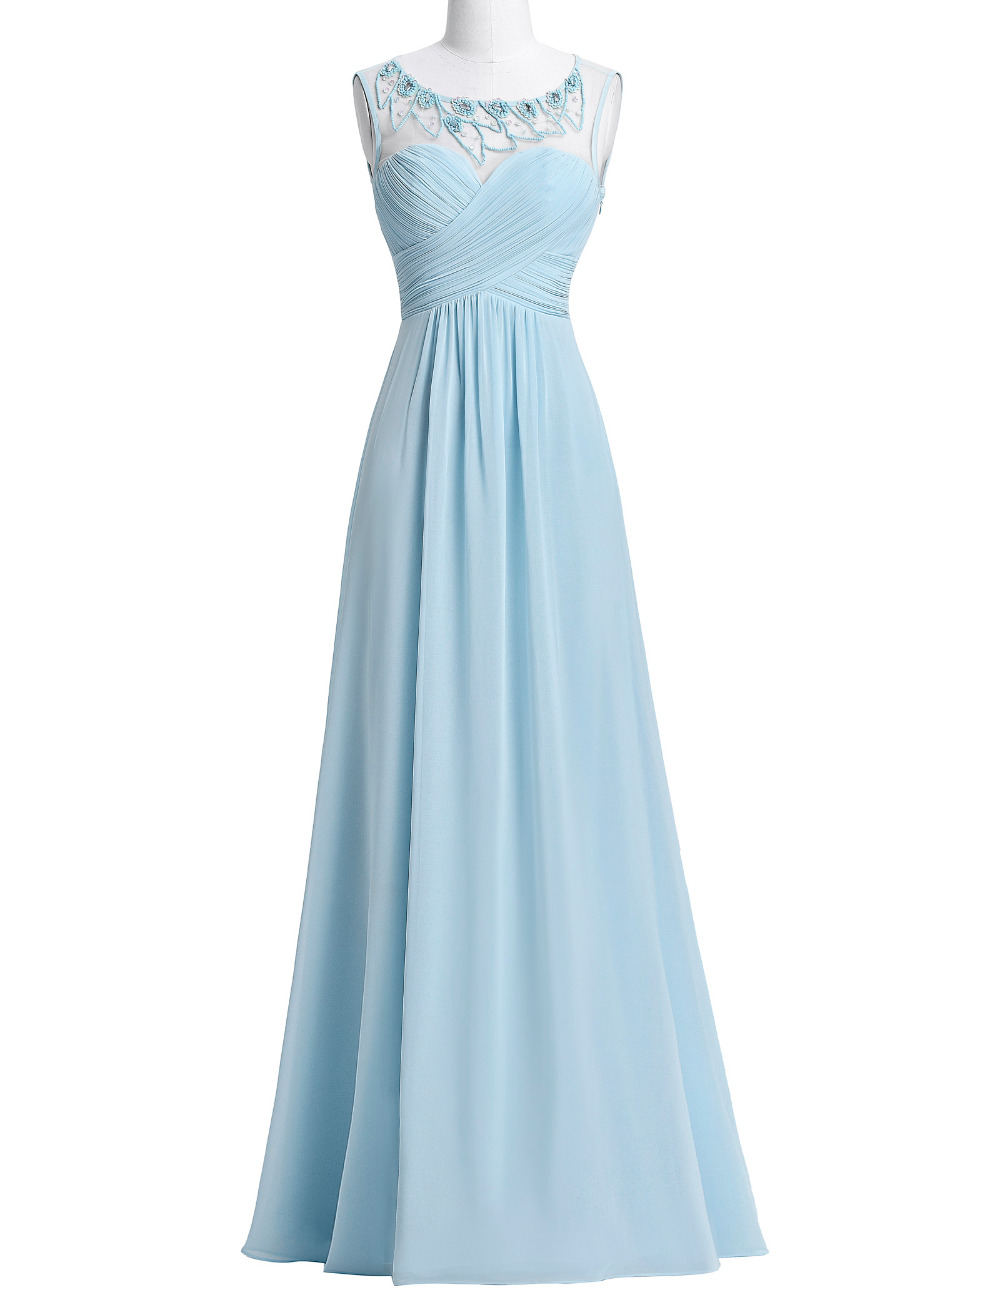 light blue dresses pinterest